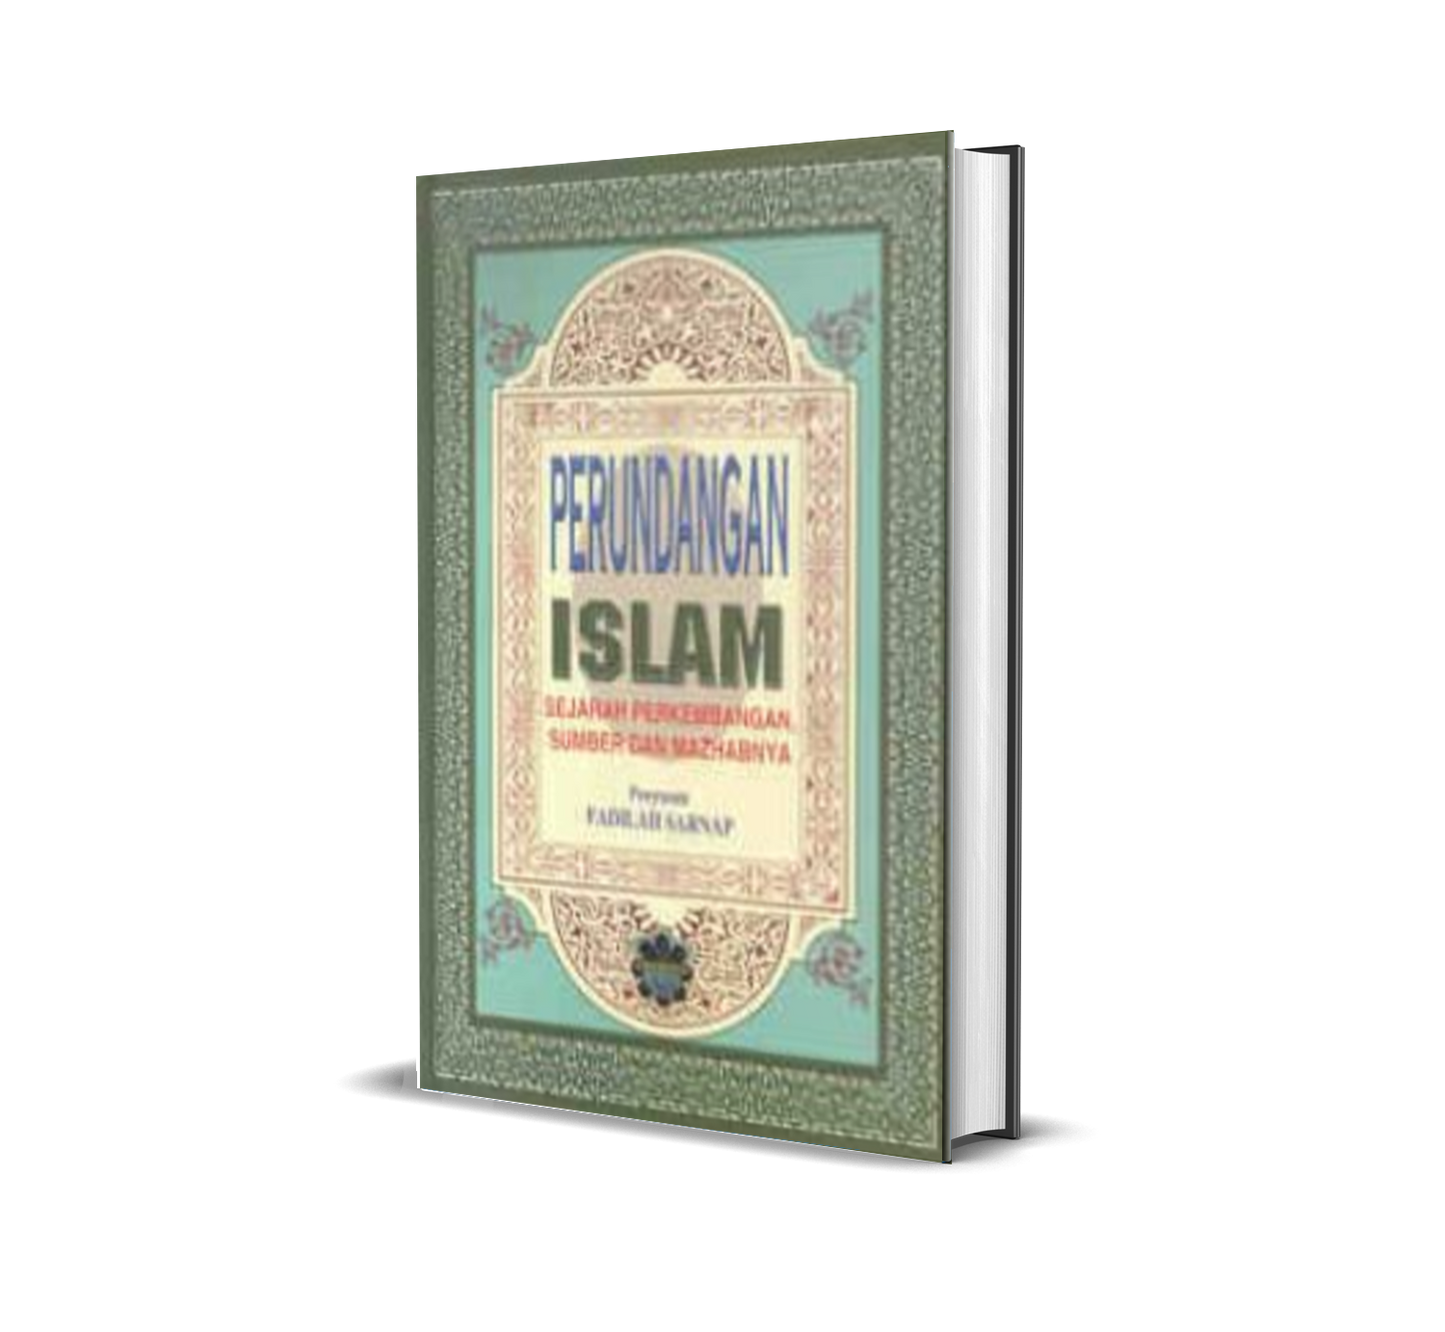 Perundangan Islam:  Sejarah Perkembangan, Sumber & Mazhabnya